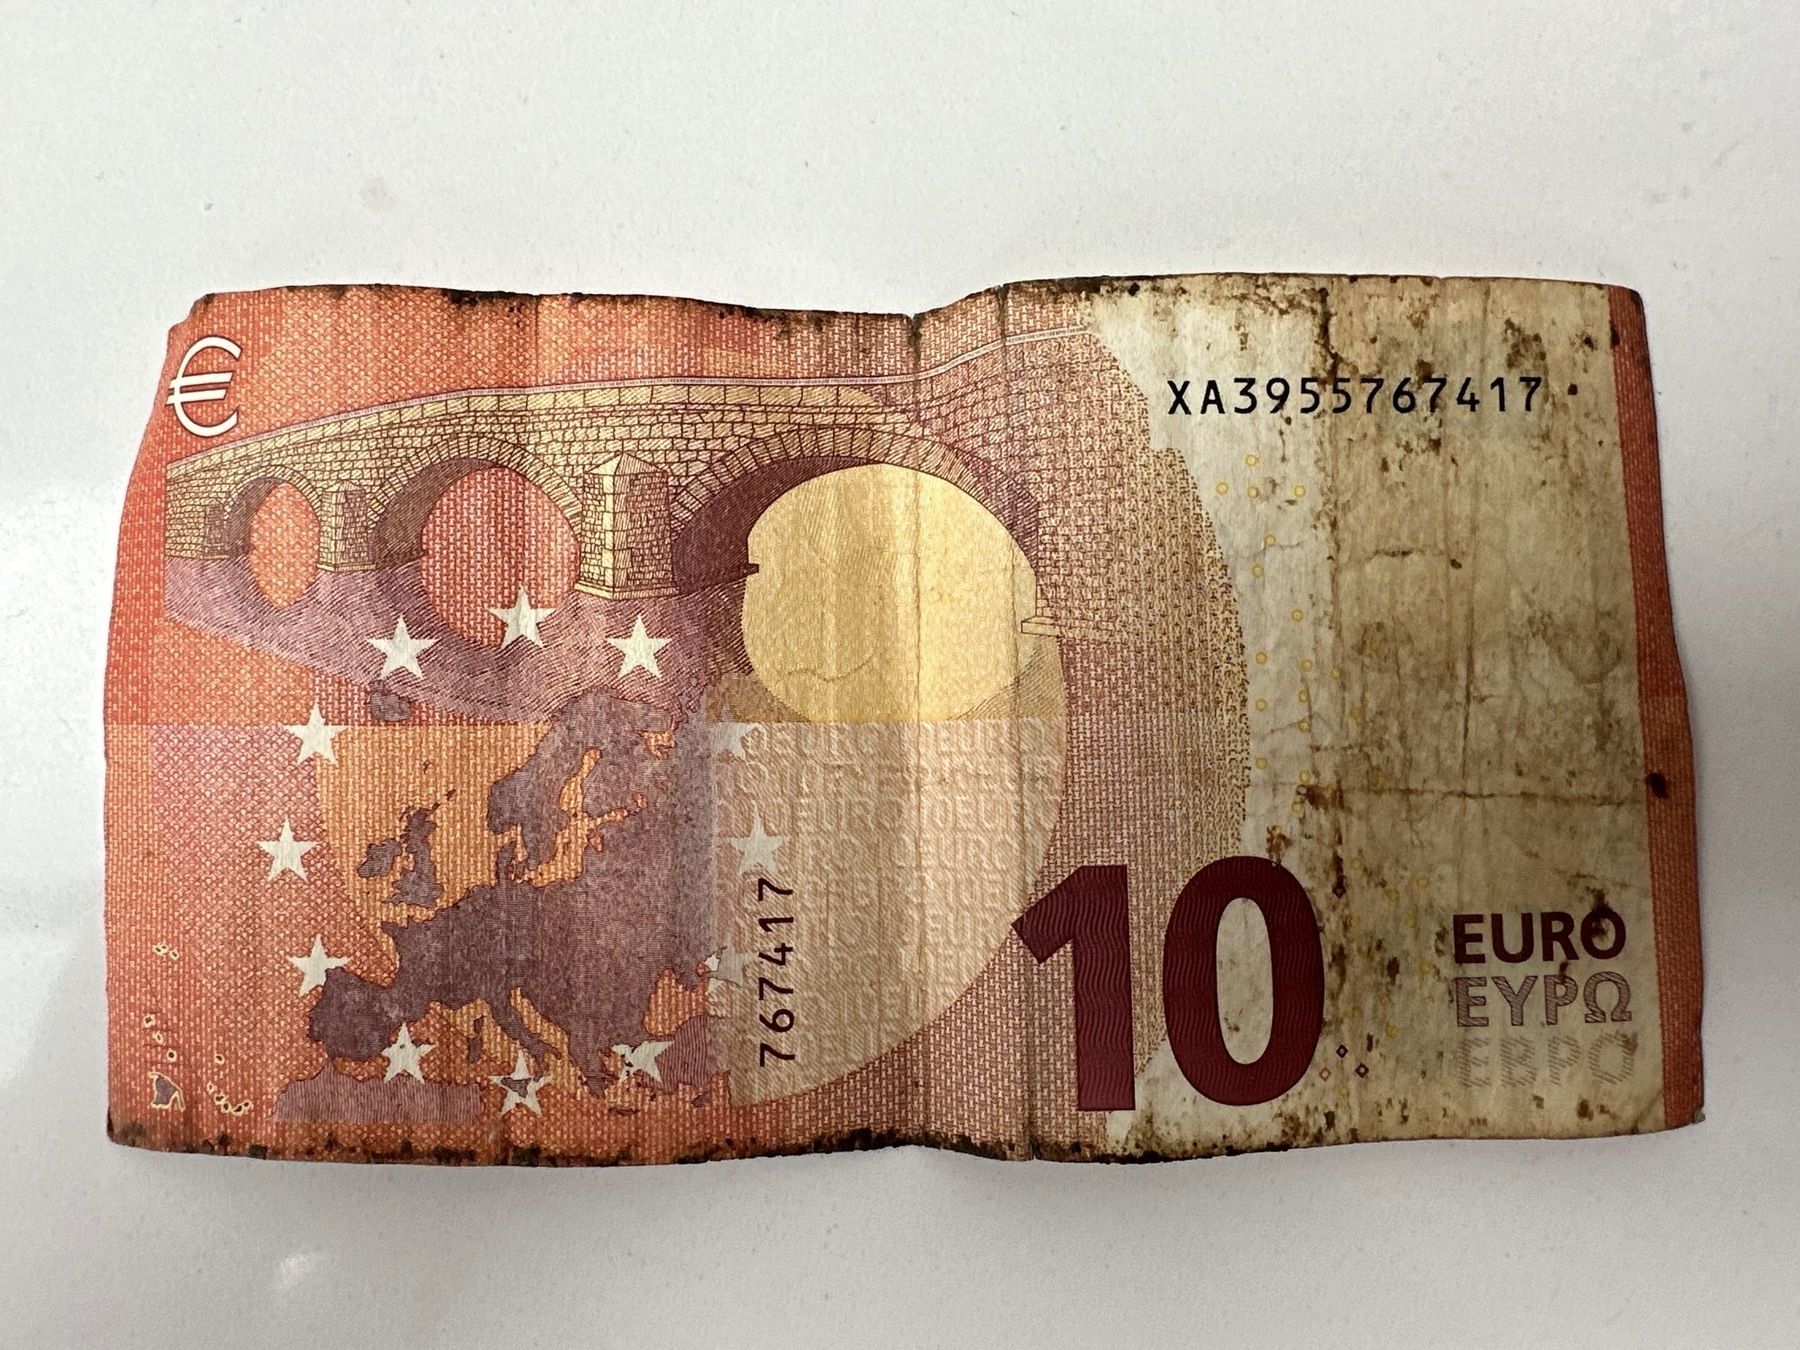 Een degoutant vuil briefje van 10 euro